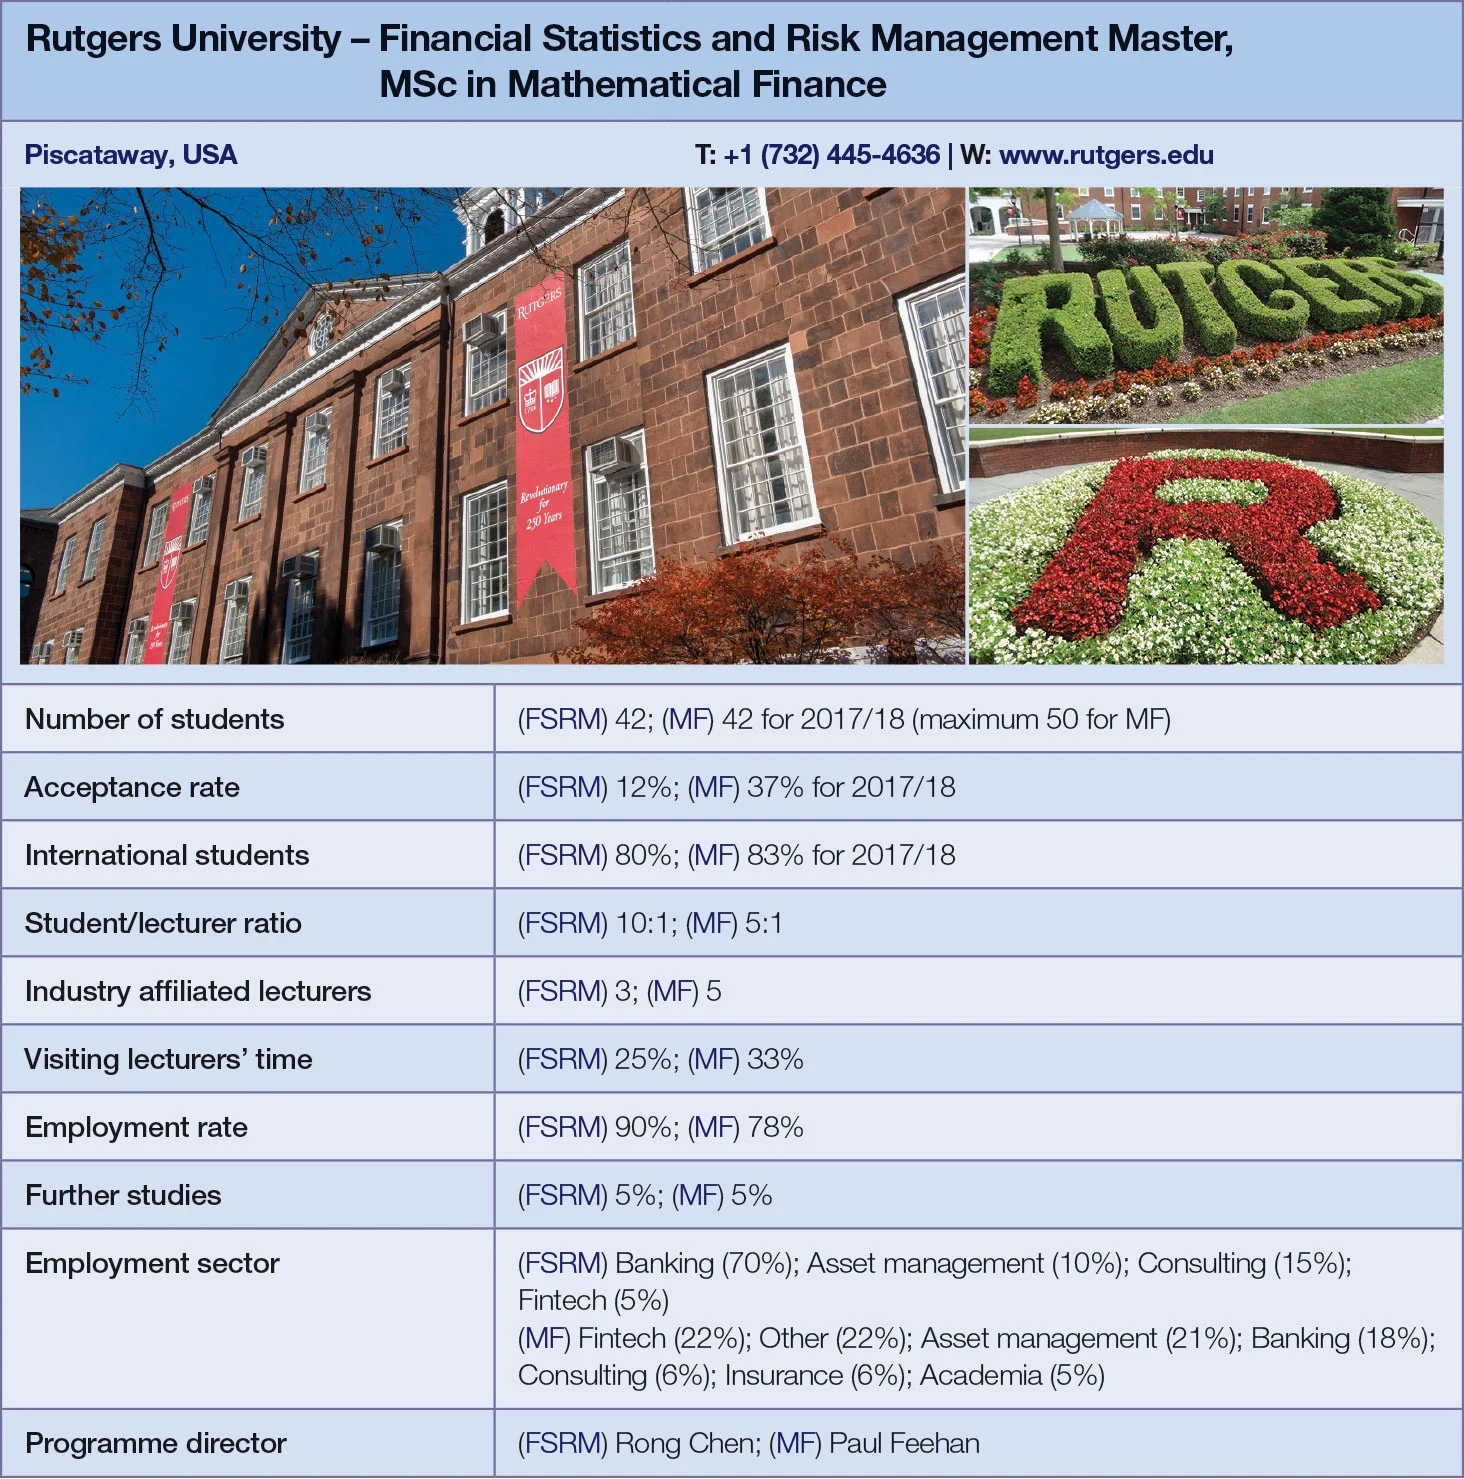 Rutgers University metrics